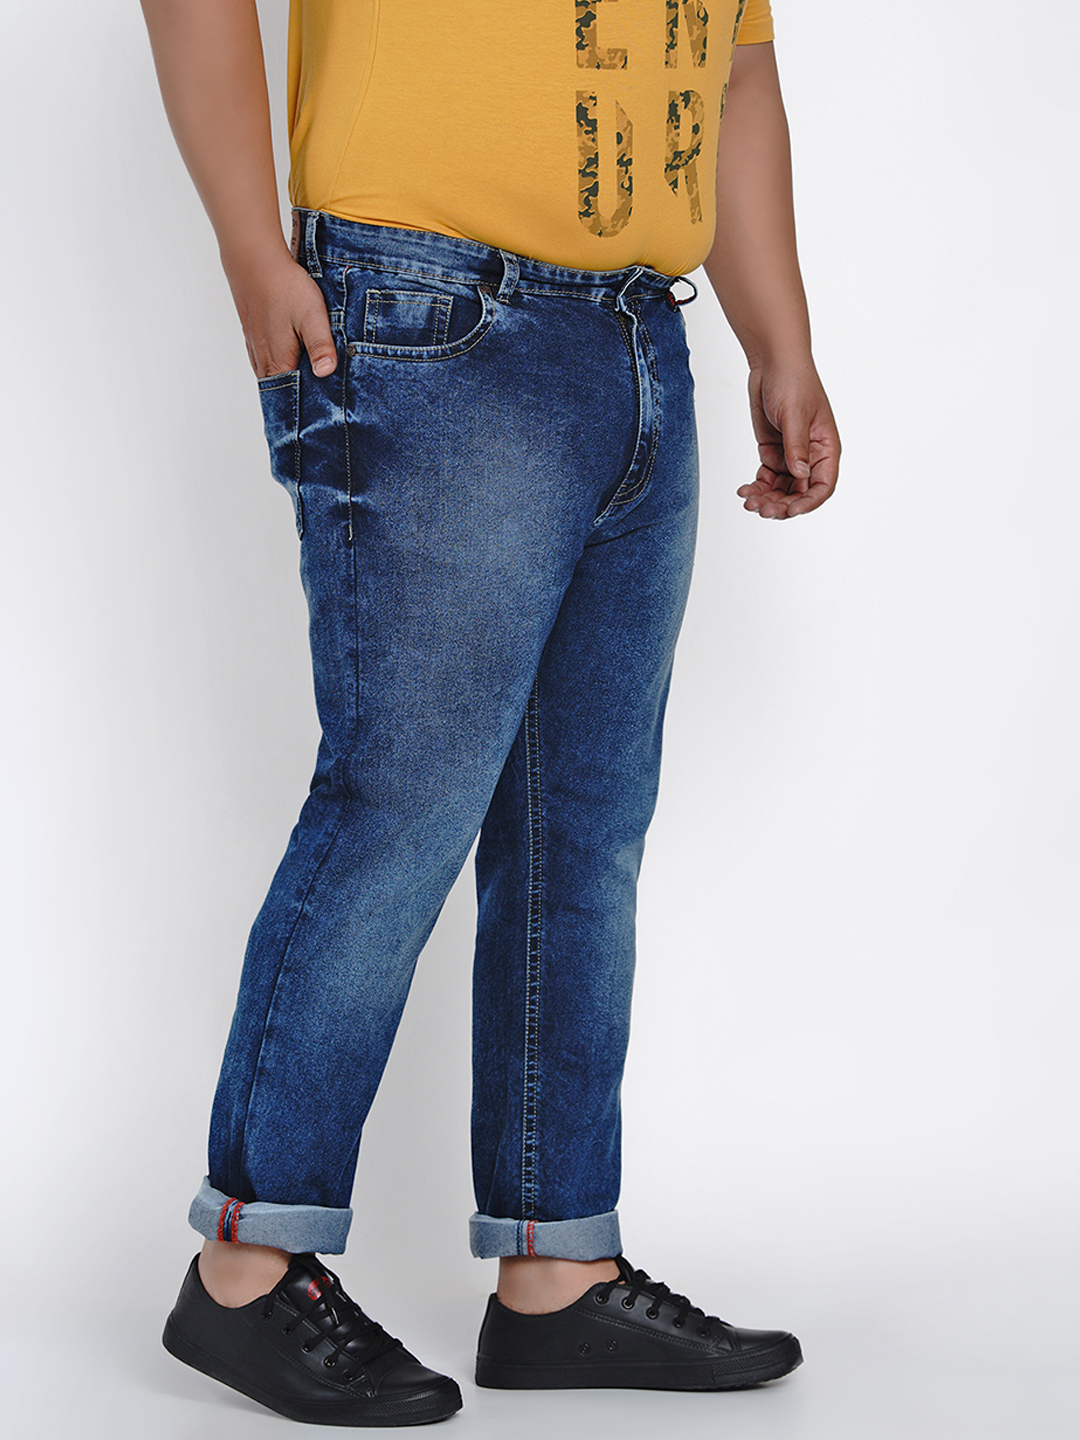 bottomwear/jeans/JPJ2013/jpj2013-4.jpg